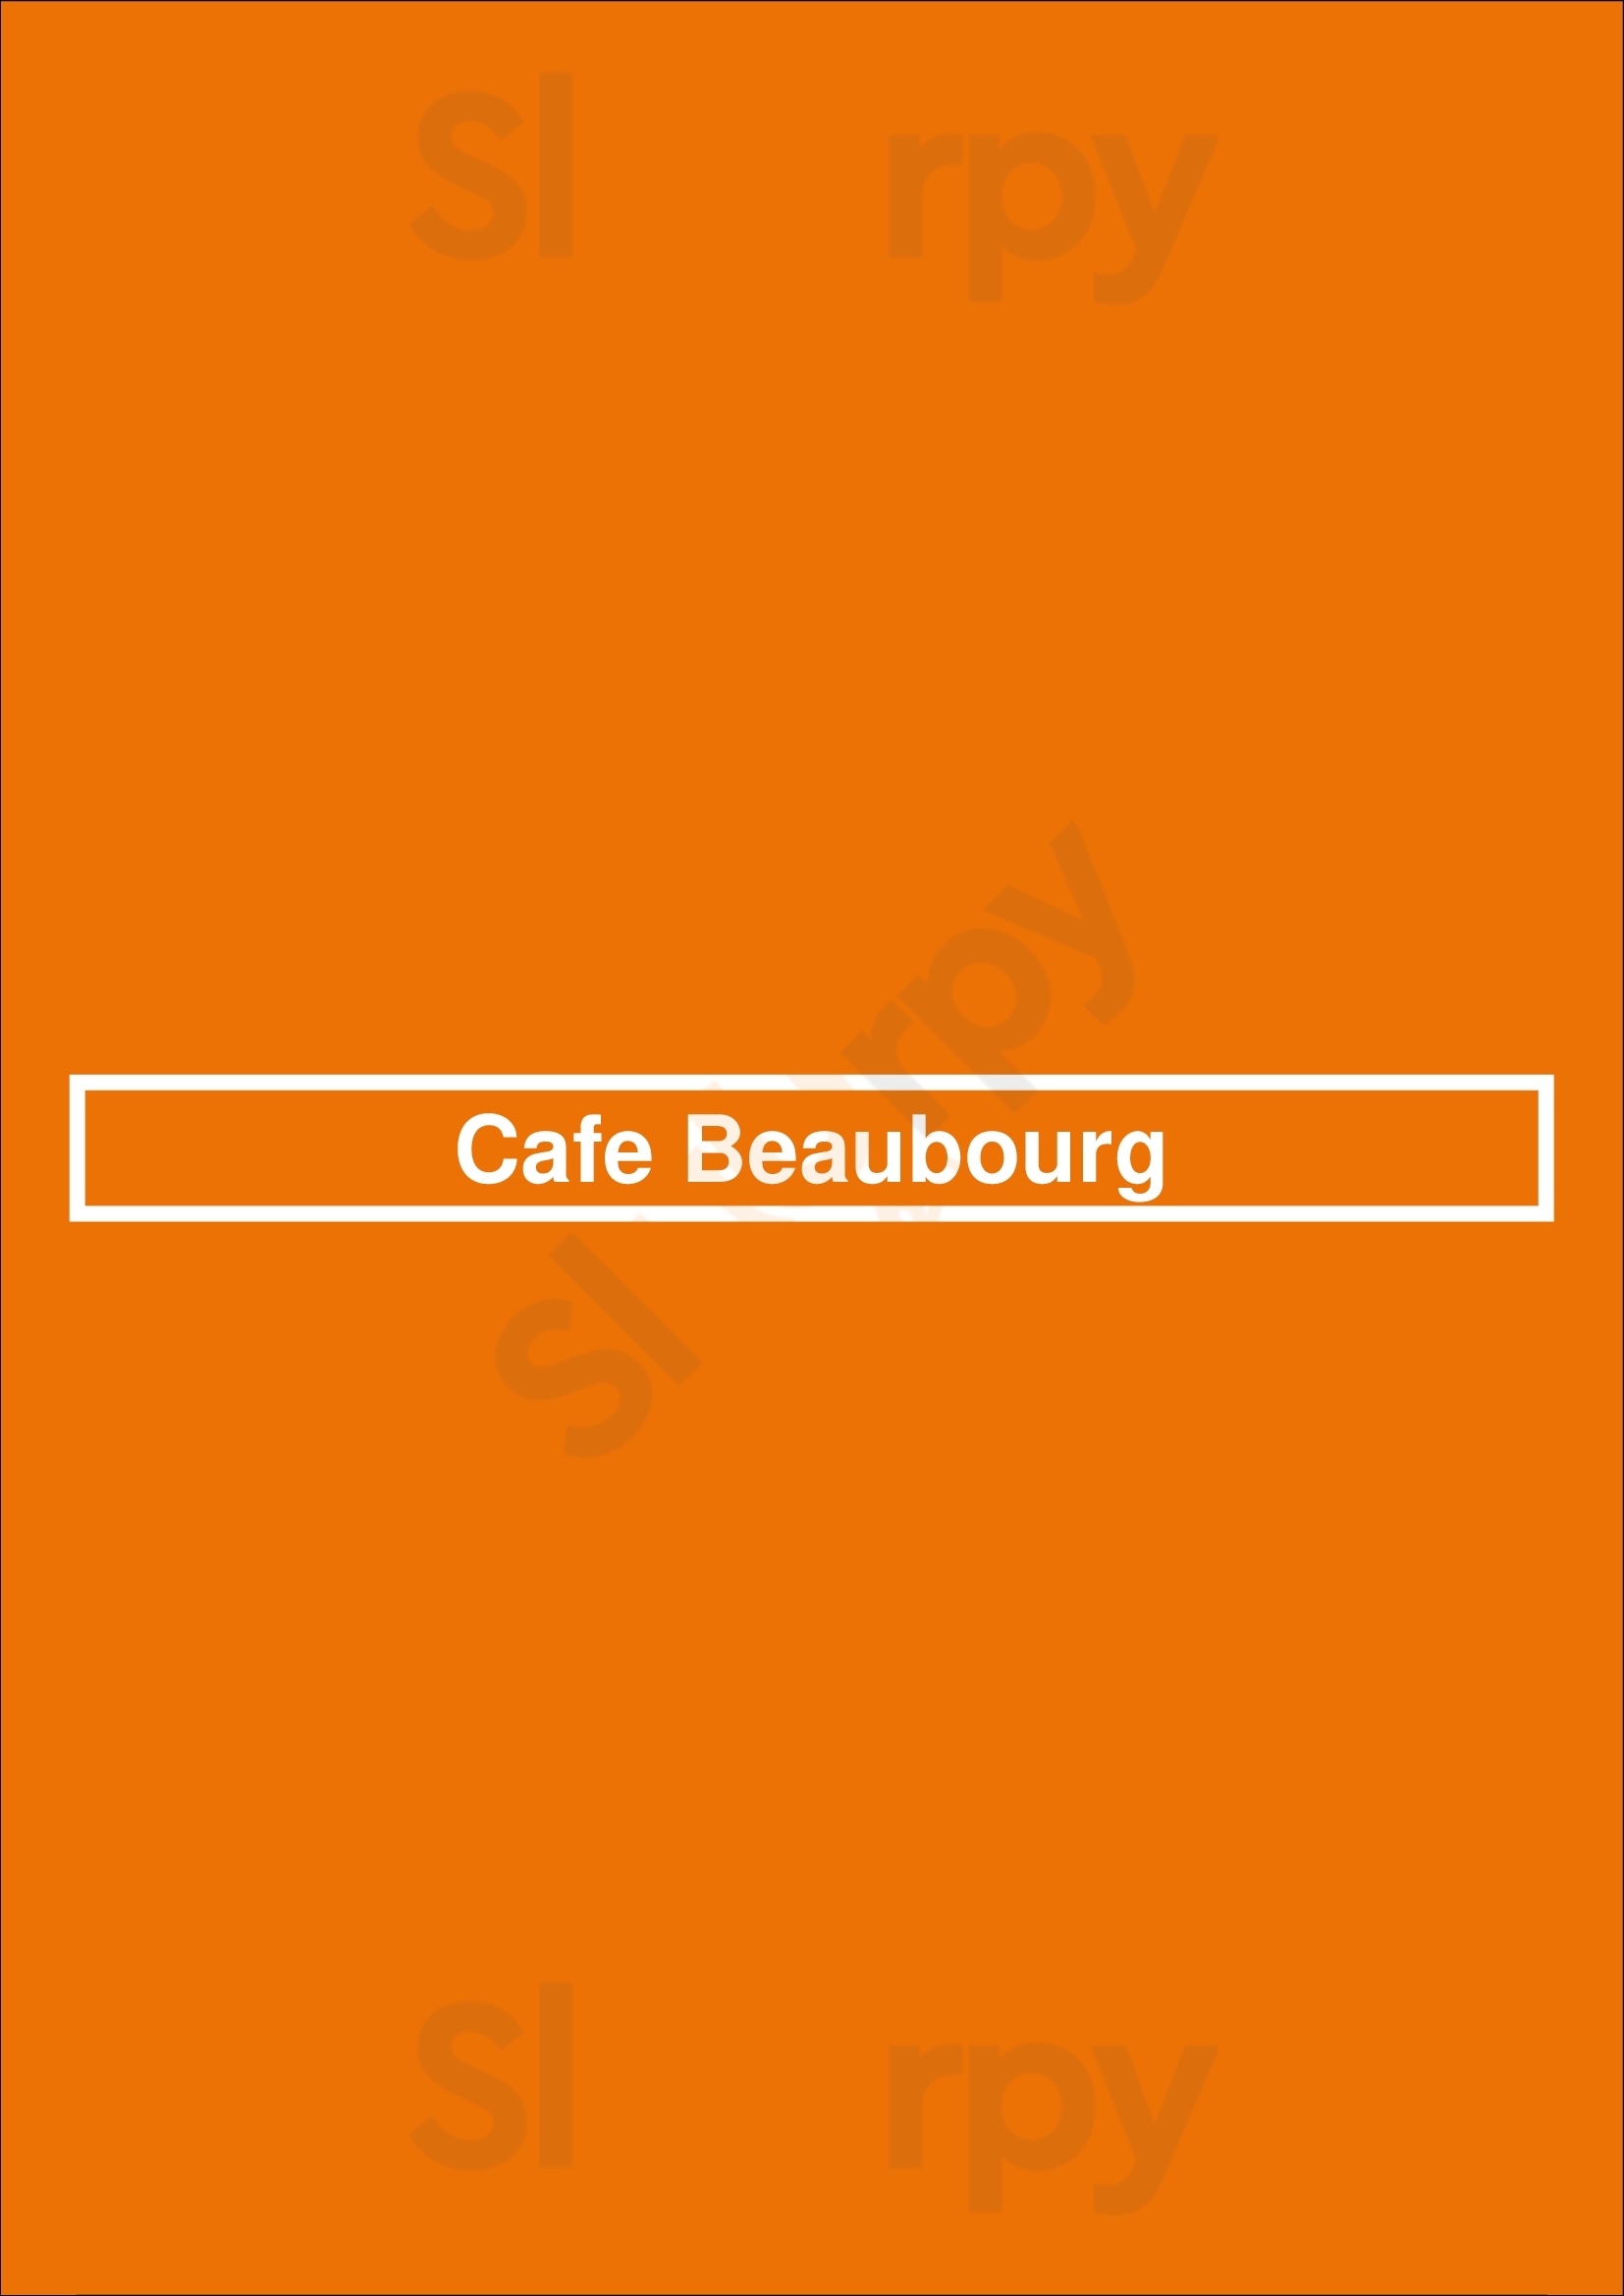 Café Beaubourg Paris Menu - 1